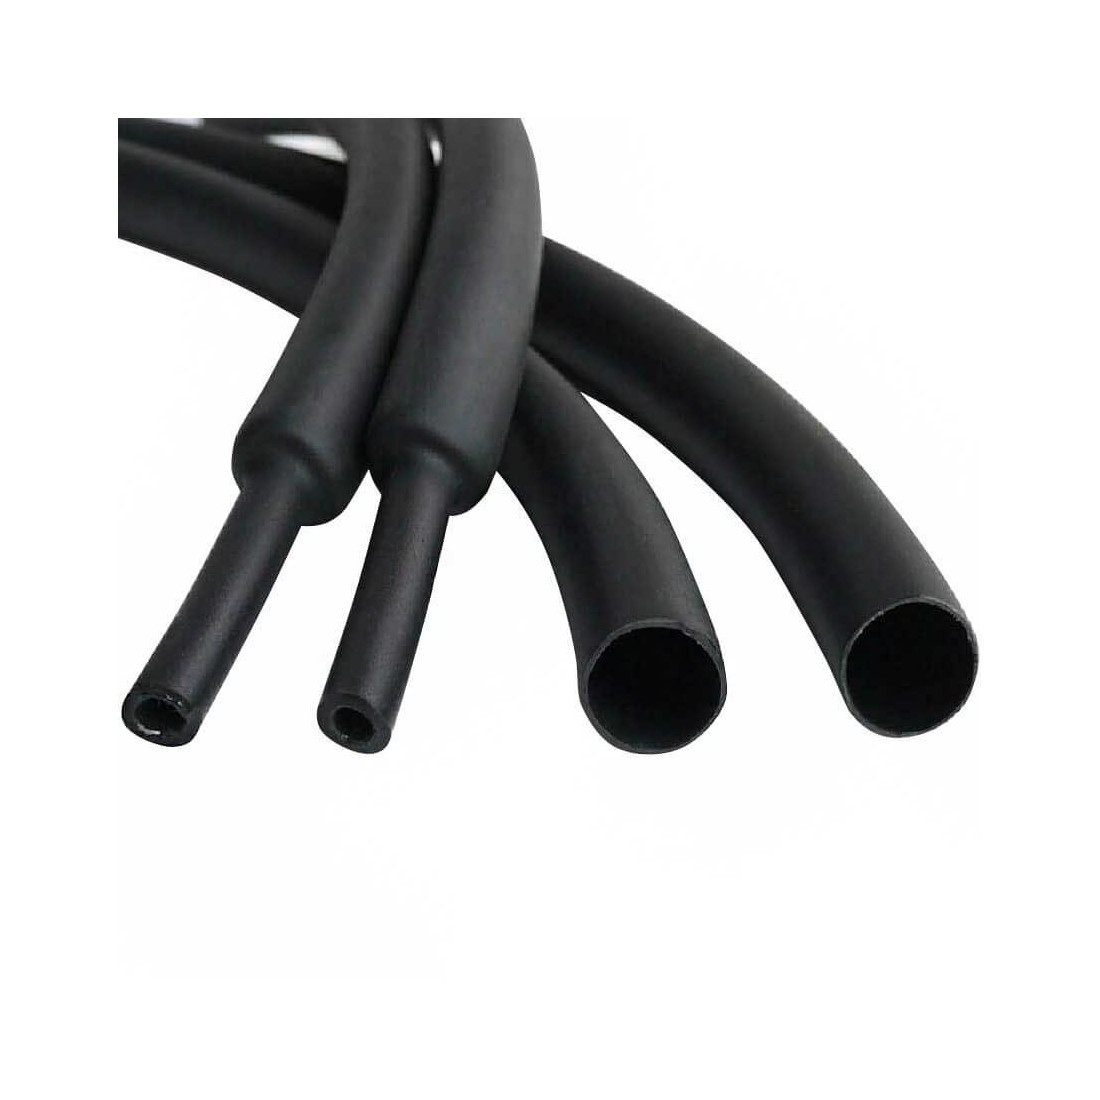 Ø 1 mm gaine isolante / tube de bougie noir PVC résistant à la